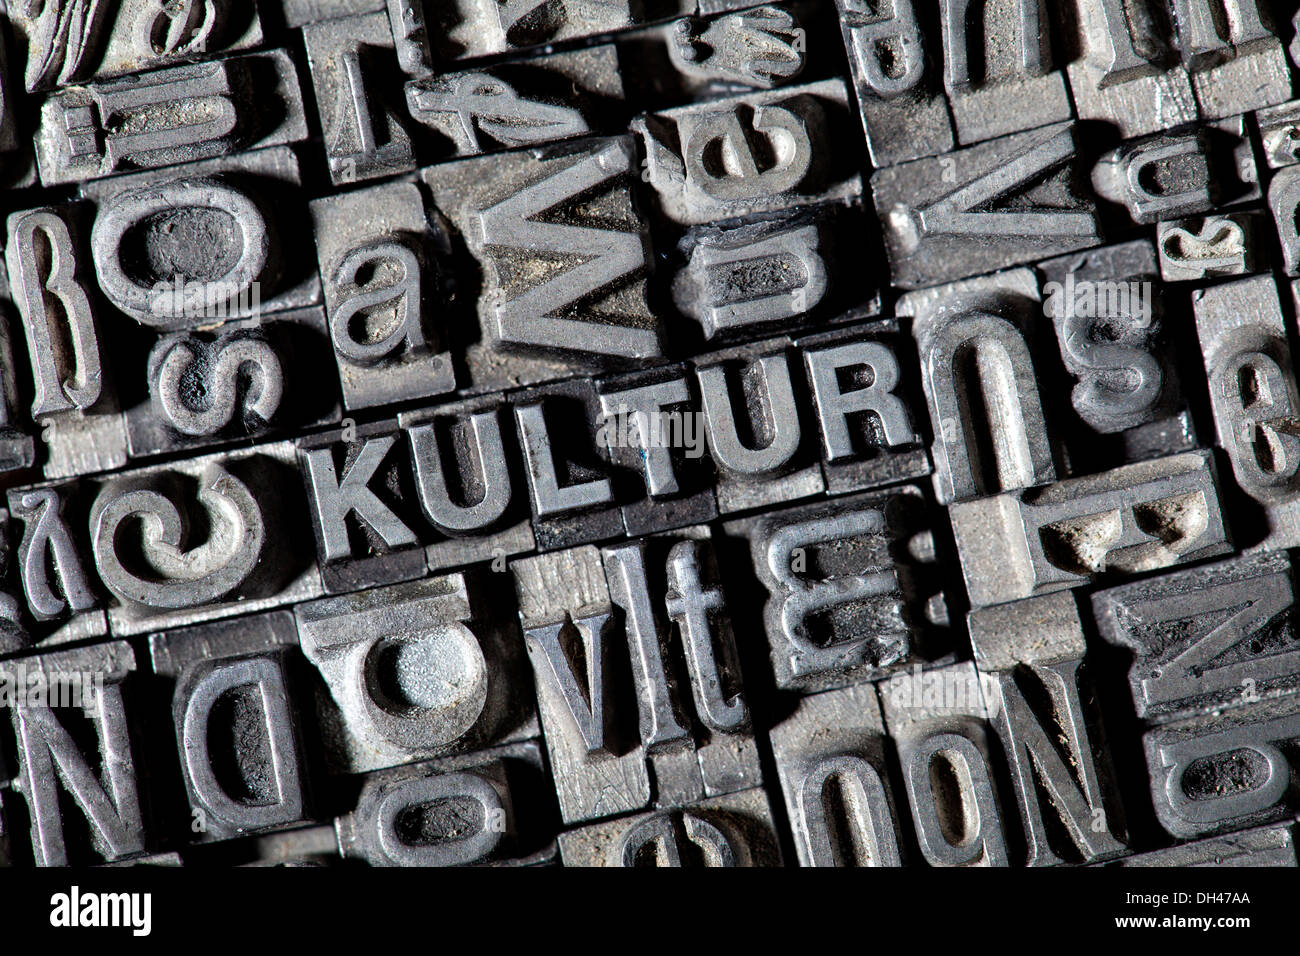 Vecchio portano lettere che compongono la parola "Kultur', tedesco per "cultura" Foto Stock